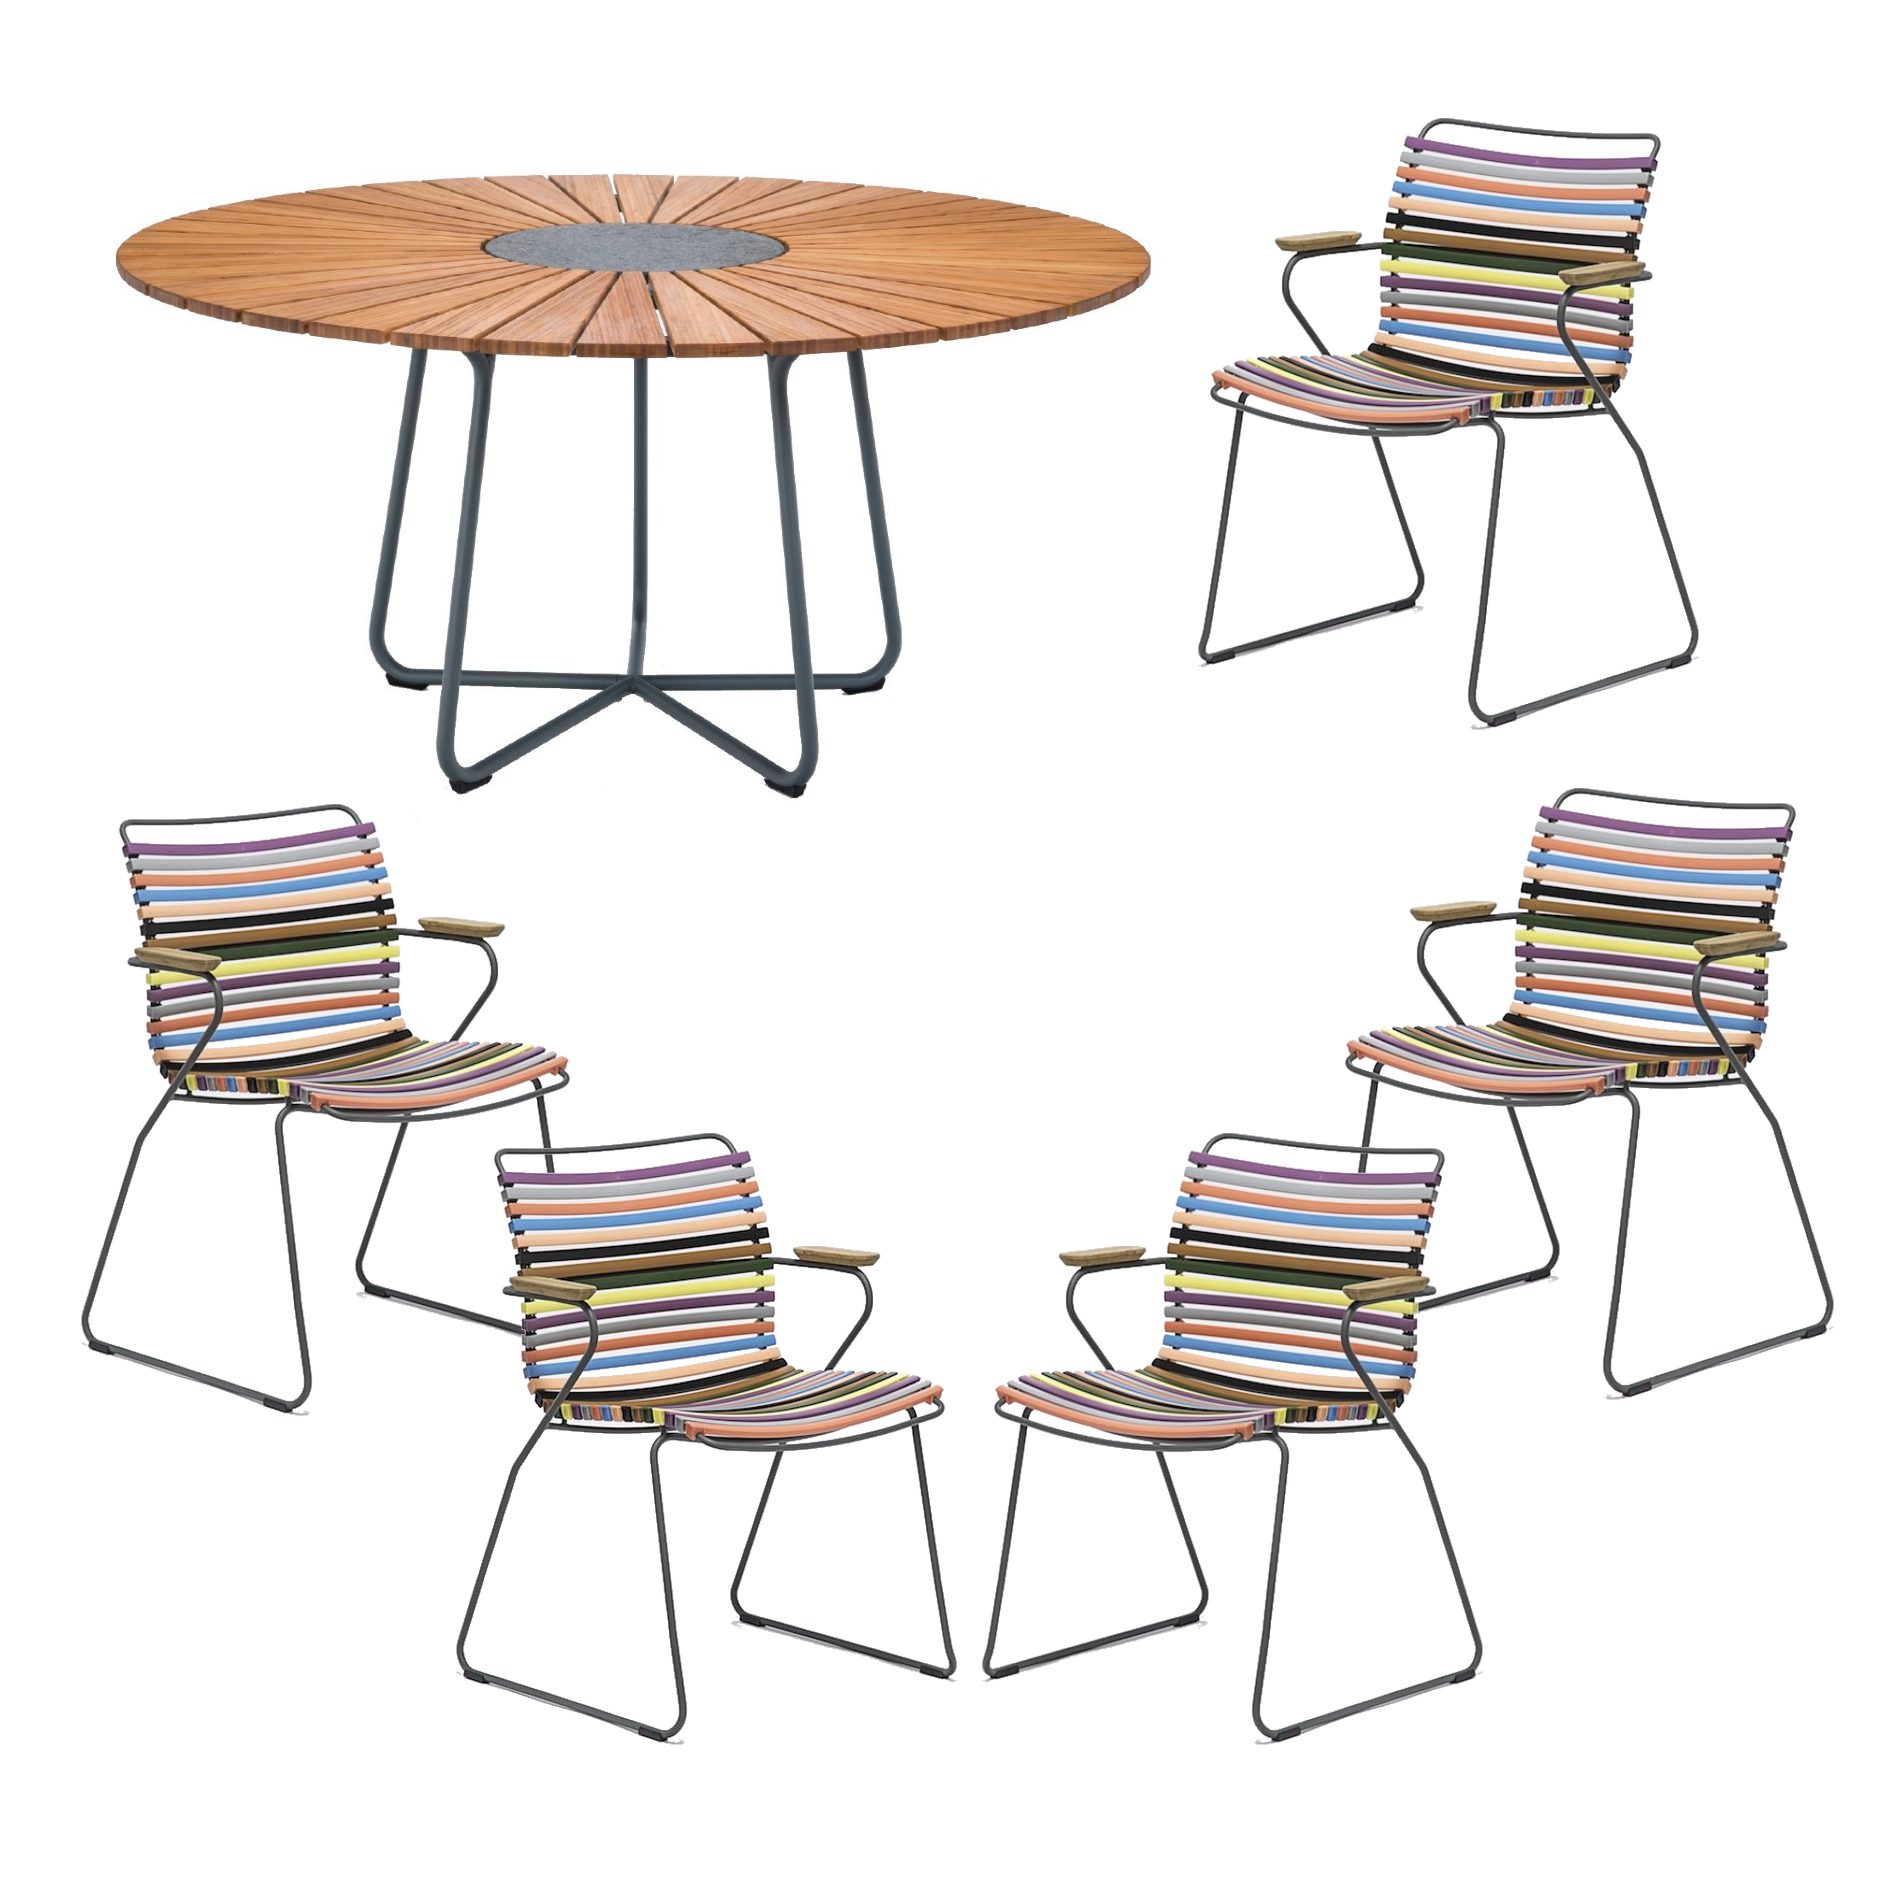 Houe Gartenmöbel-Set mit Tisch "Circle" Ø 150 cm und 5x Stapelsessel "Click", Lamellen multicolor 1 (warme Farben), Tischplatte Bambus